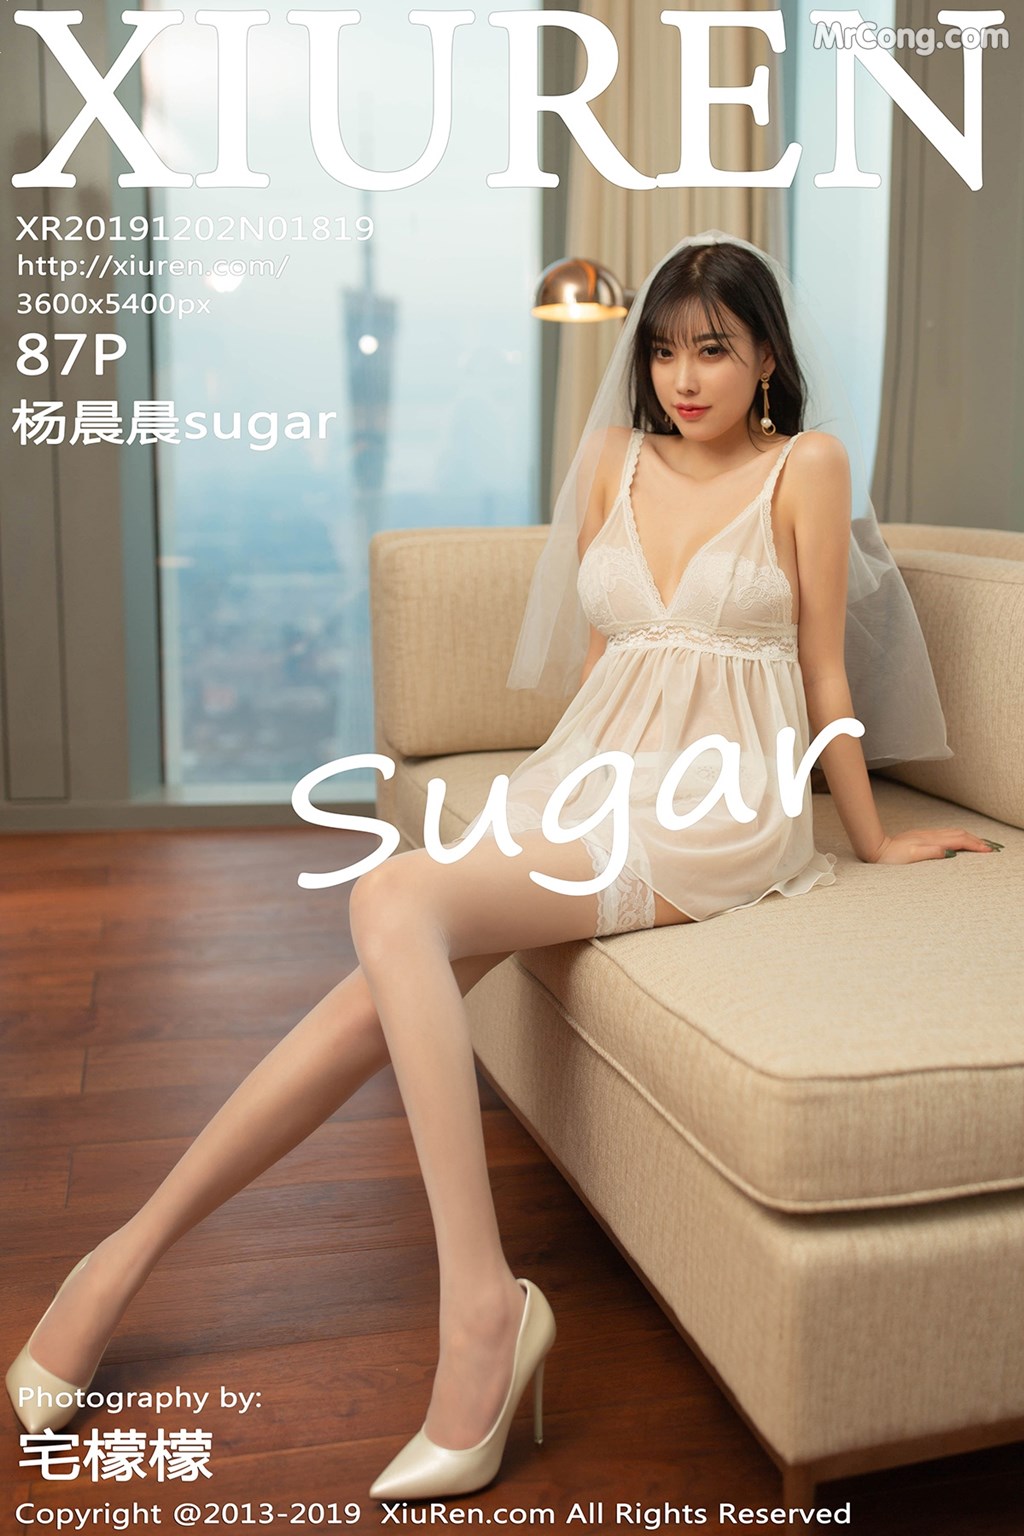 [XIUREN] No.1819 Yang Chen Chen 杨晨晨sugar Cover Photo